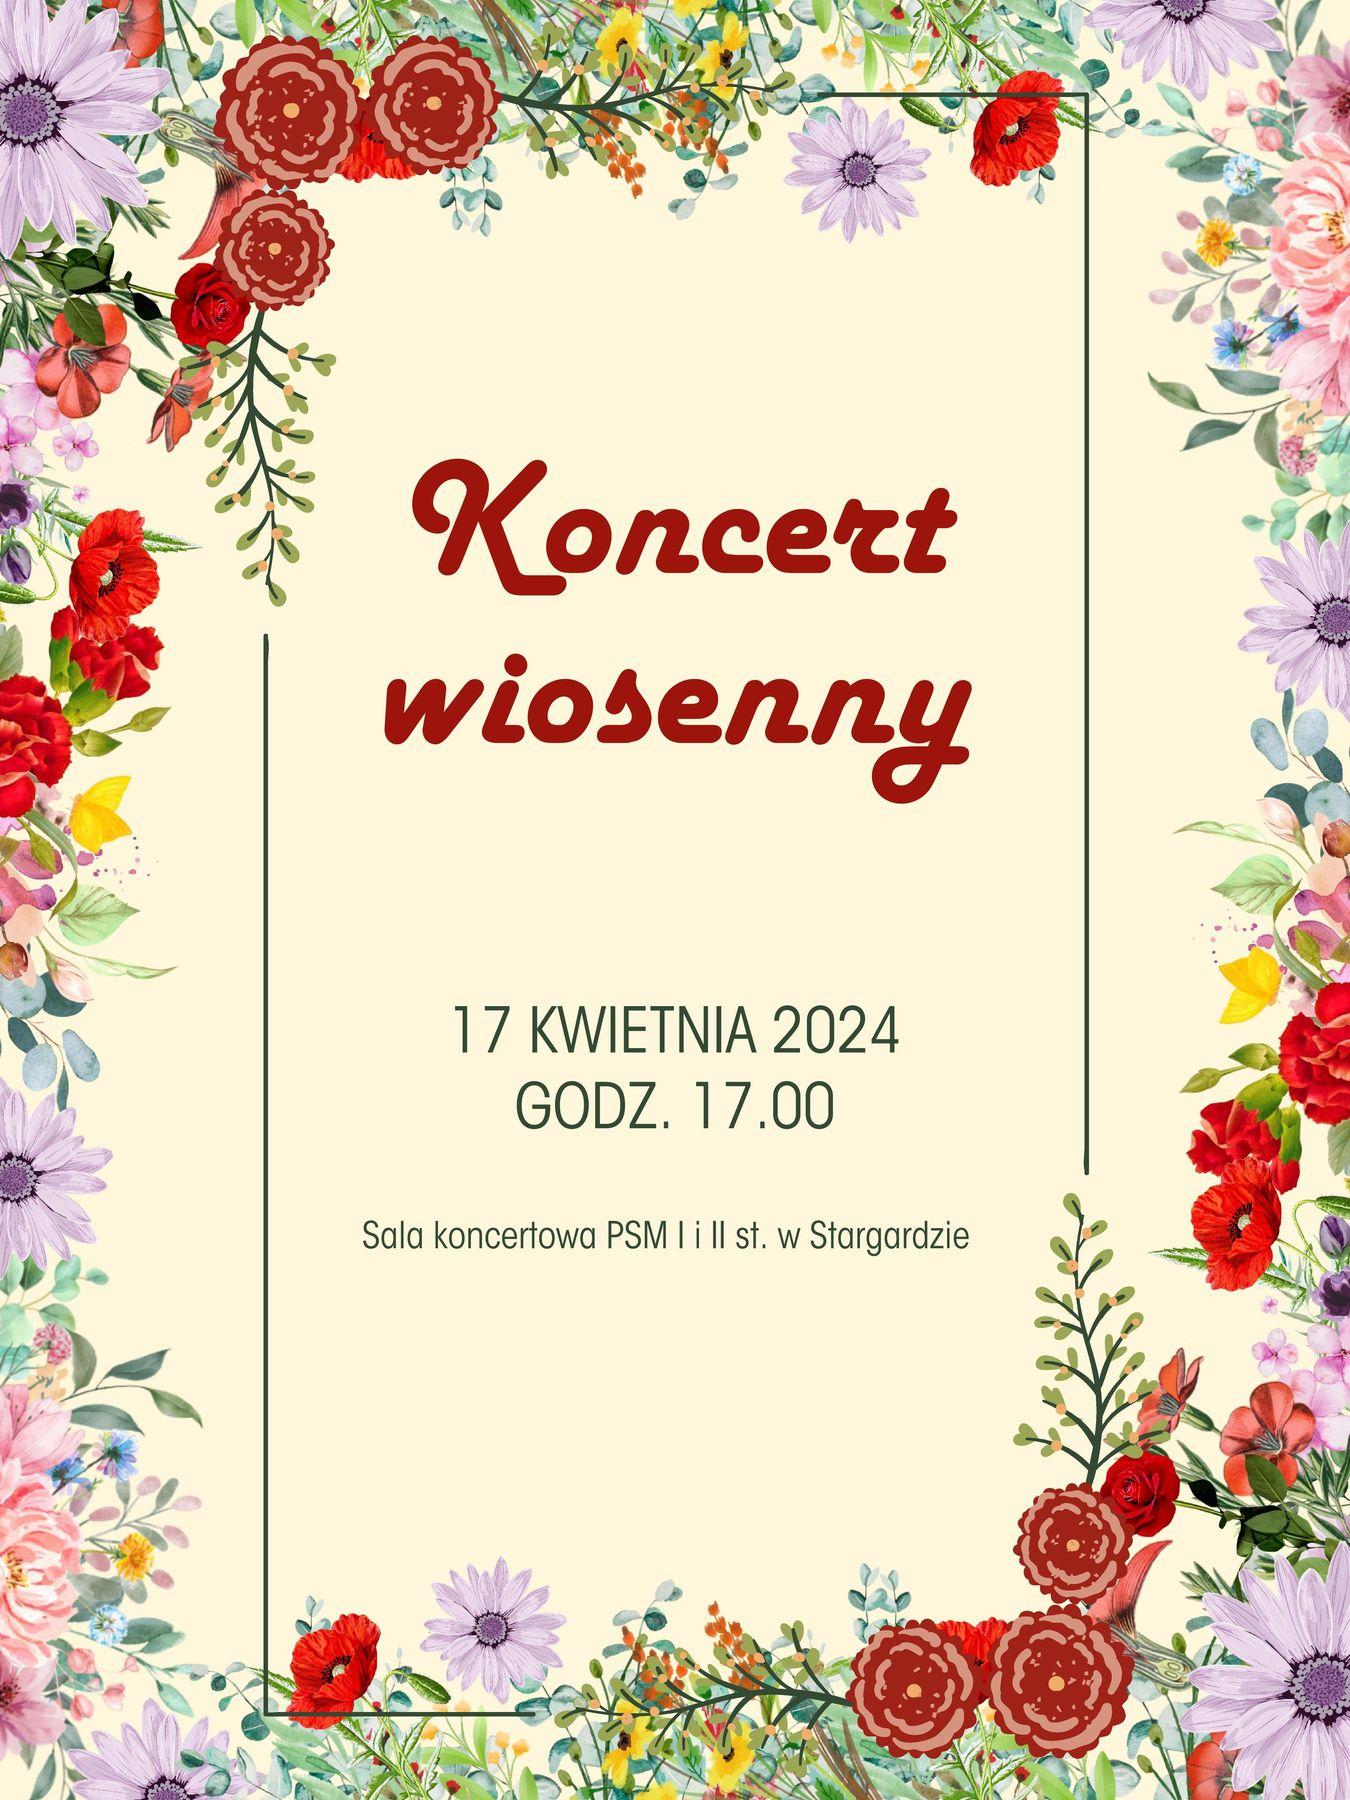 Plakat Koncertu wiosennego w dniu 17 kwietnia 2024 o godzinie 17.00. Plakat ma kremowe tło, a ozdabia go dokoła wianek różnokolorowych wiosennych kwiatów. 